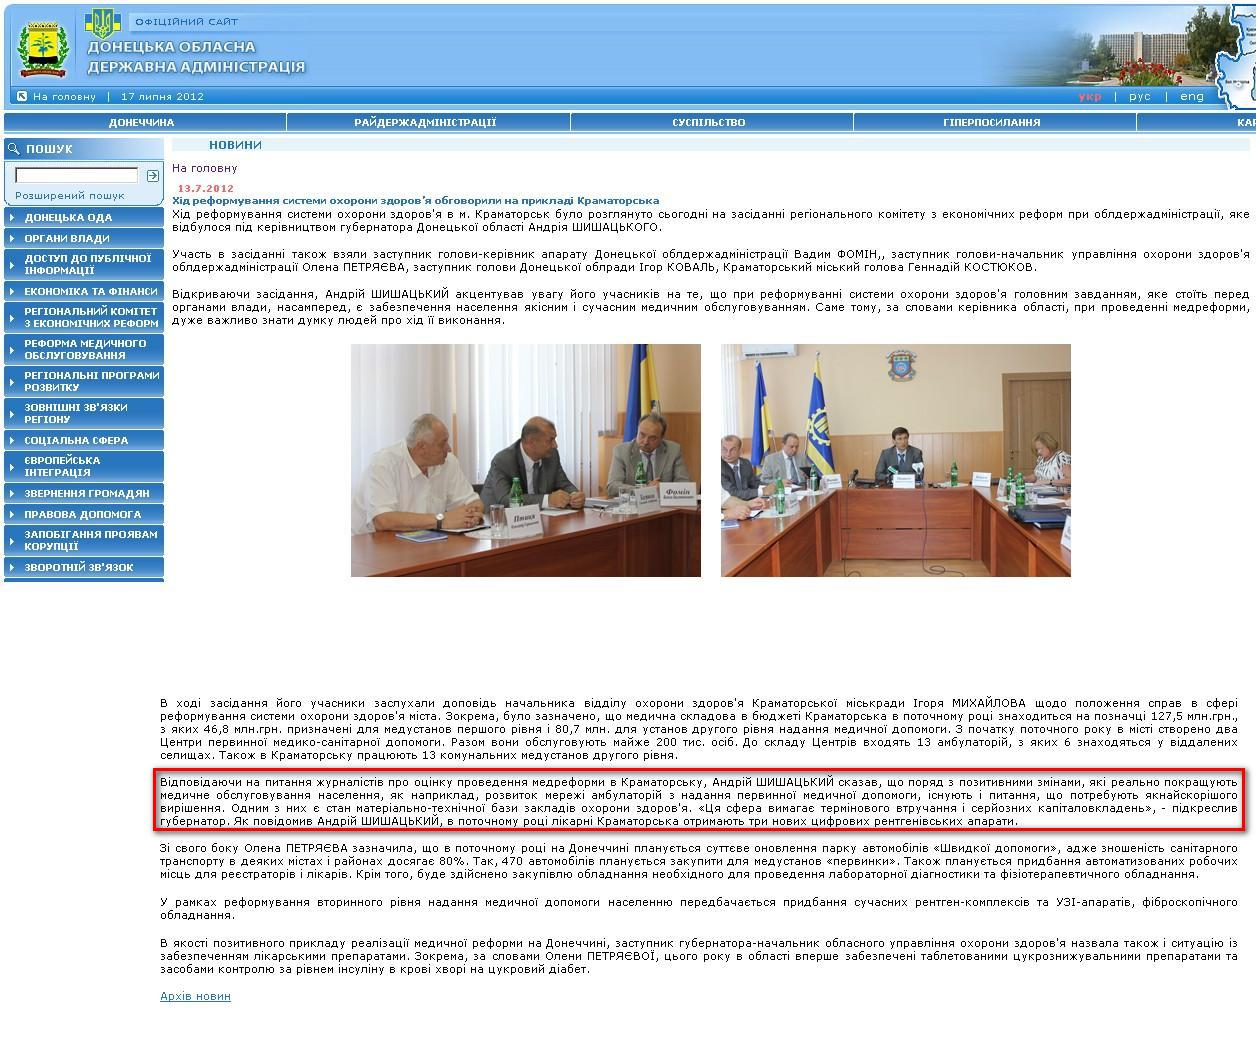 http://www.donoda.gov.ua/main/ua/news/detail/39491.htm